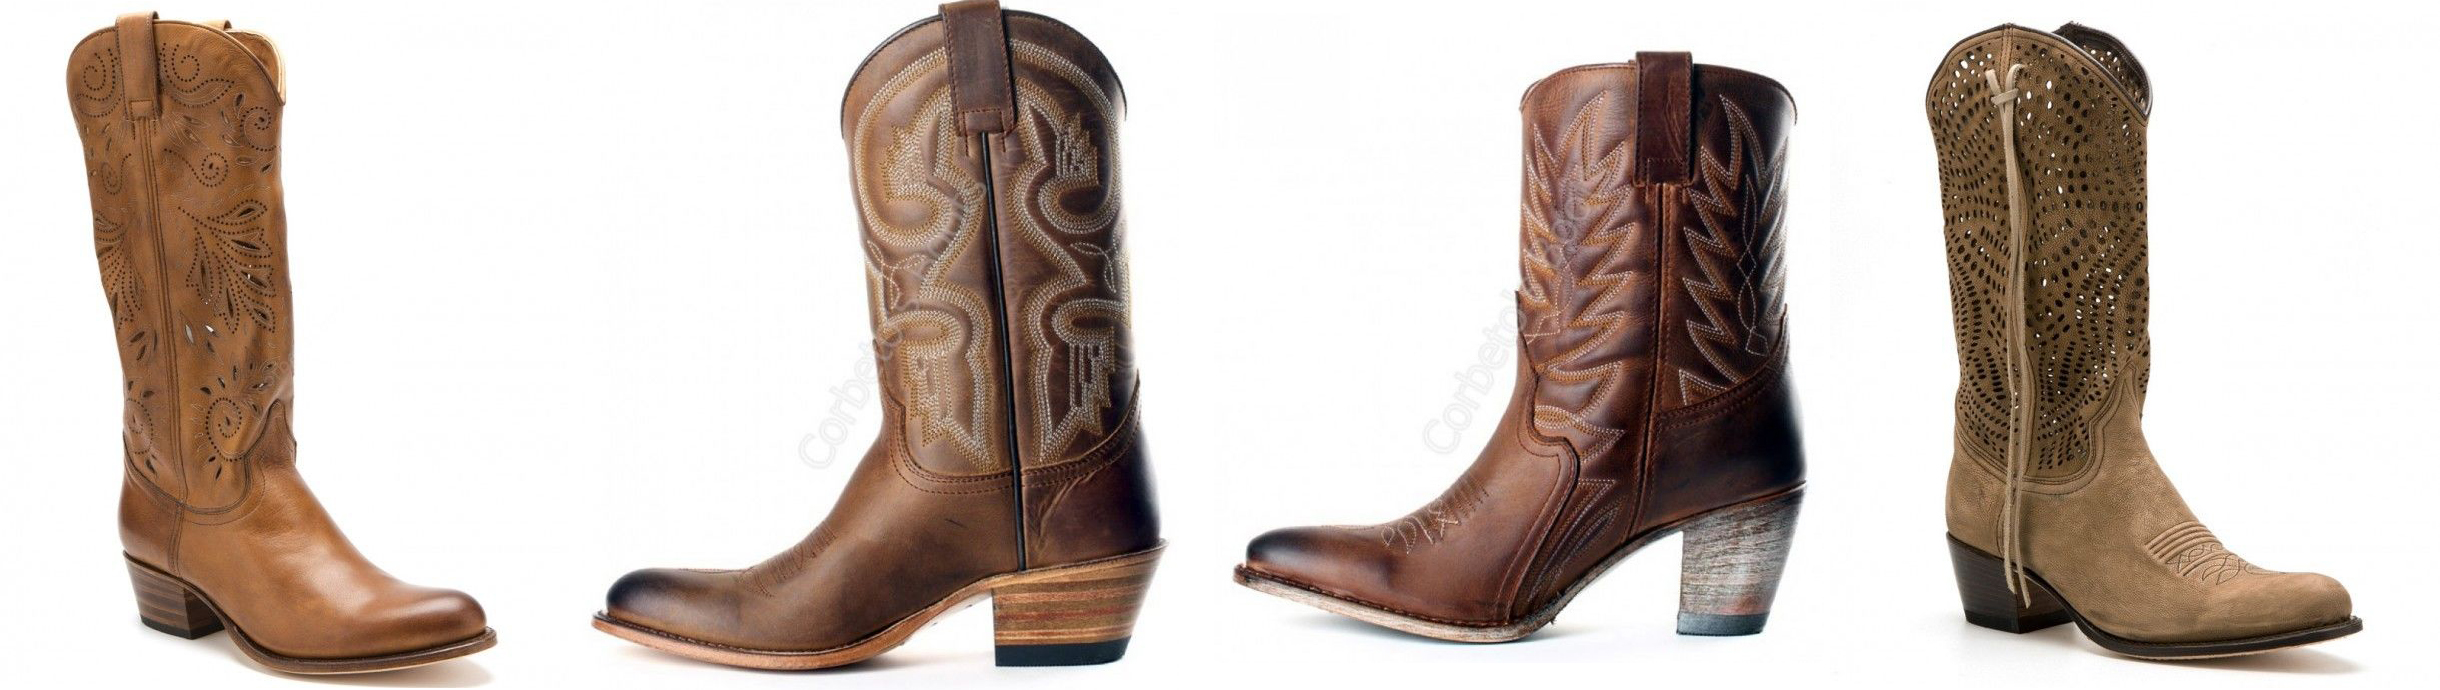 cowboy, estilo también verano - Corbeto's Boots Blog